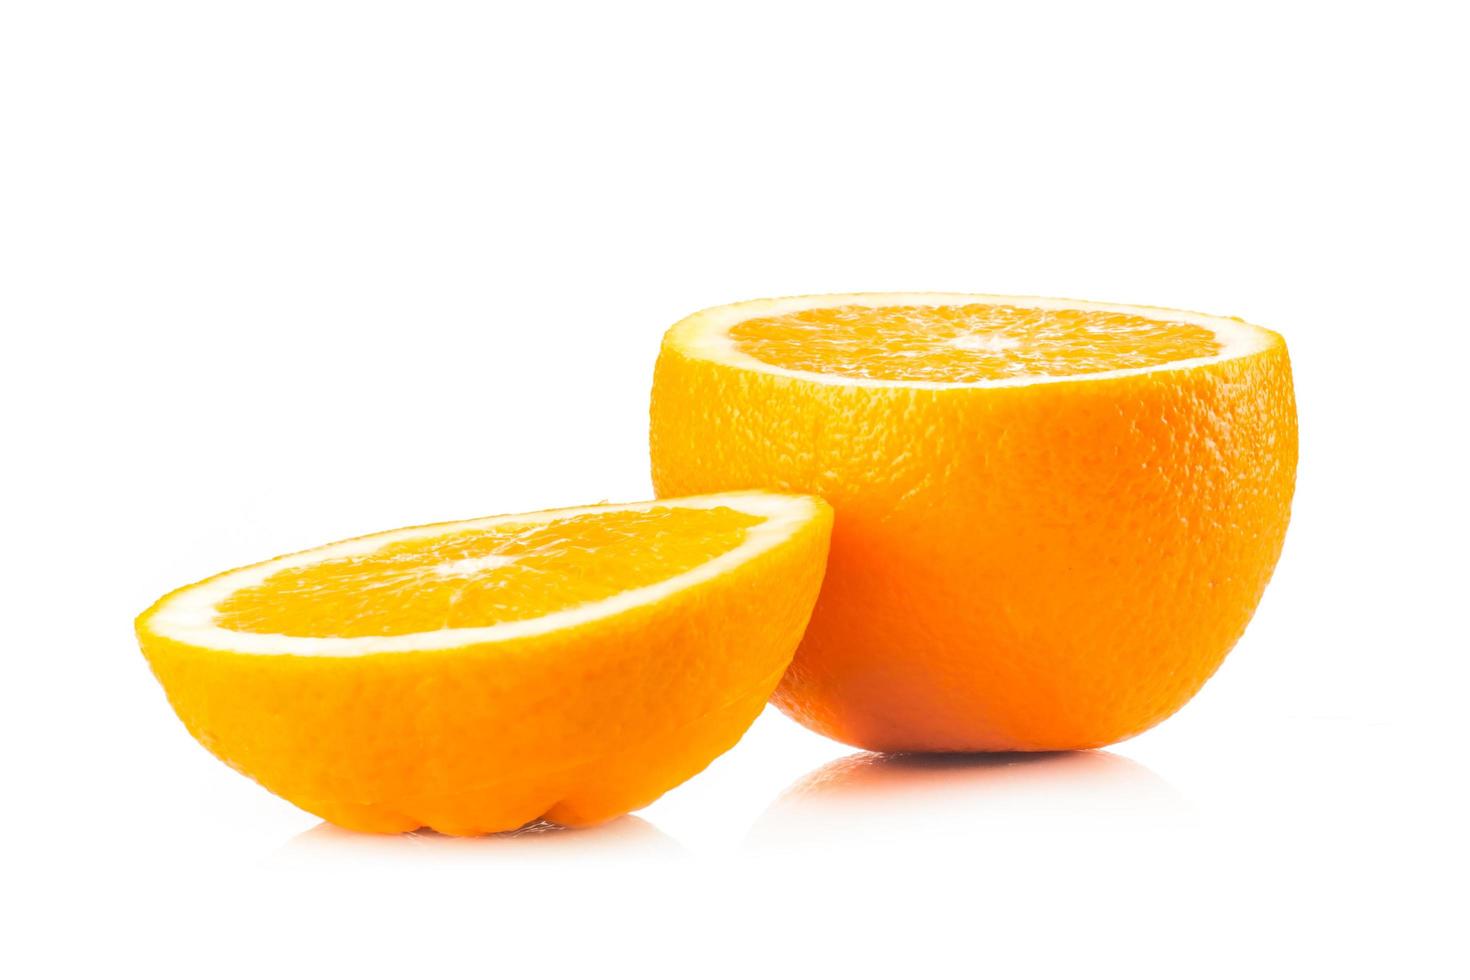 Ripe oranges on white background photo